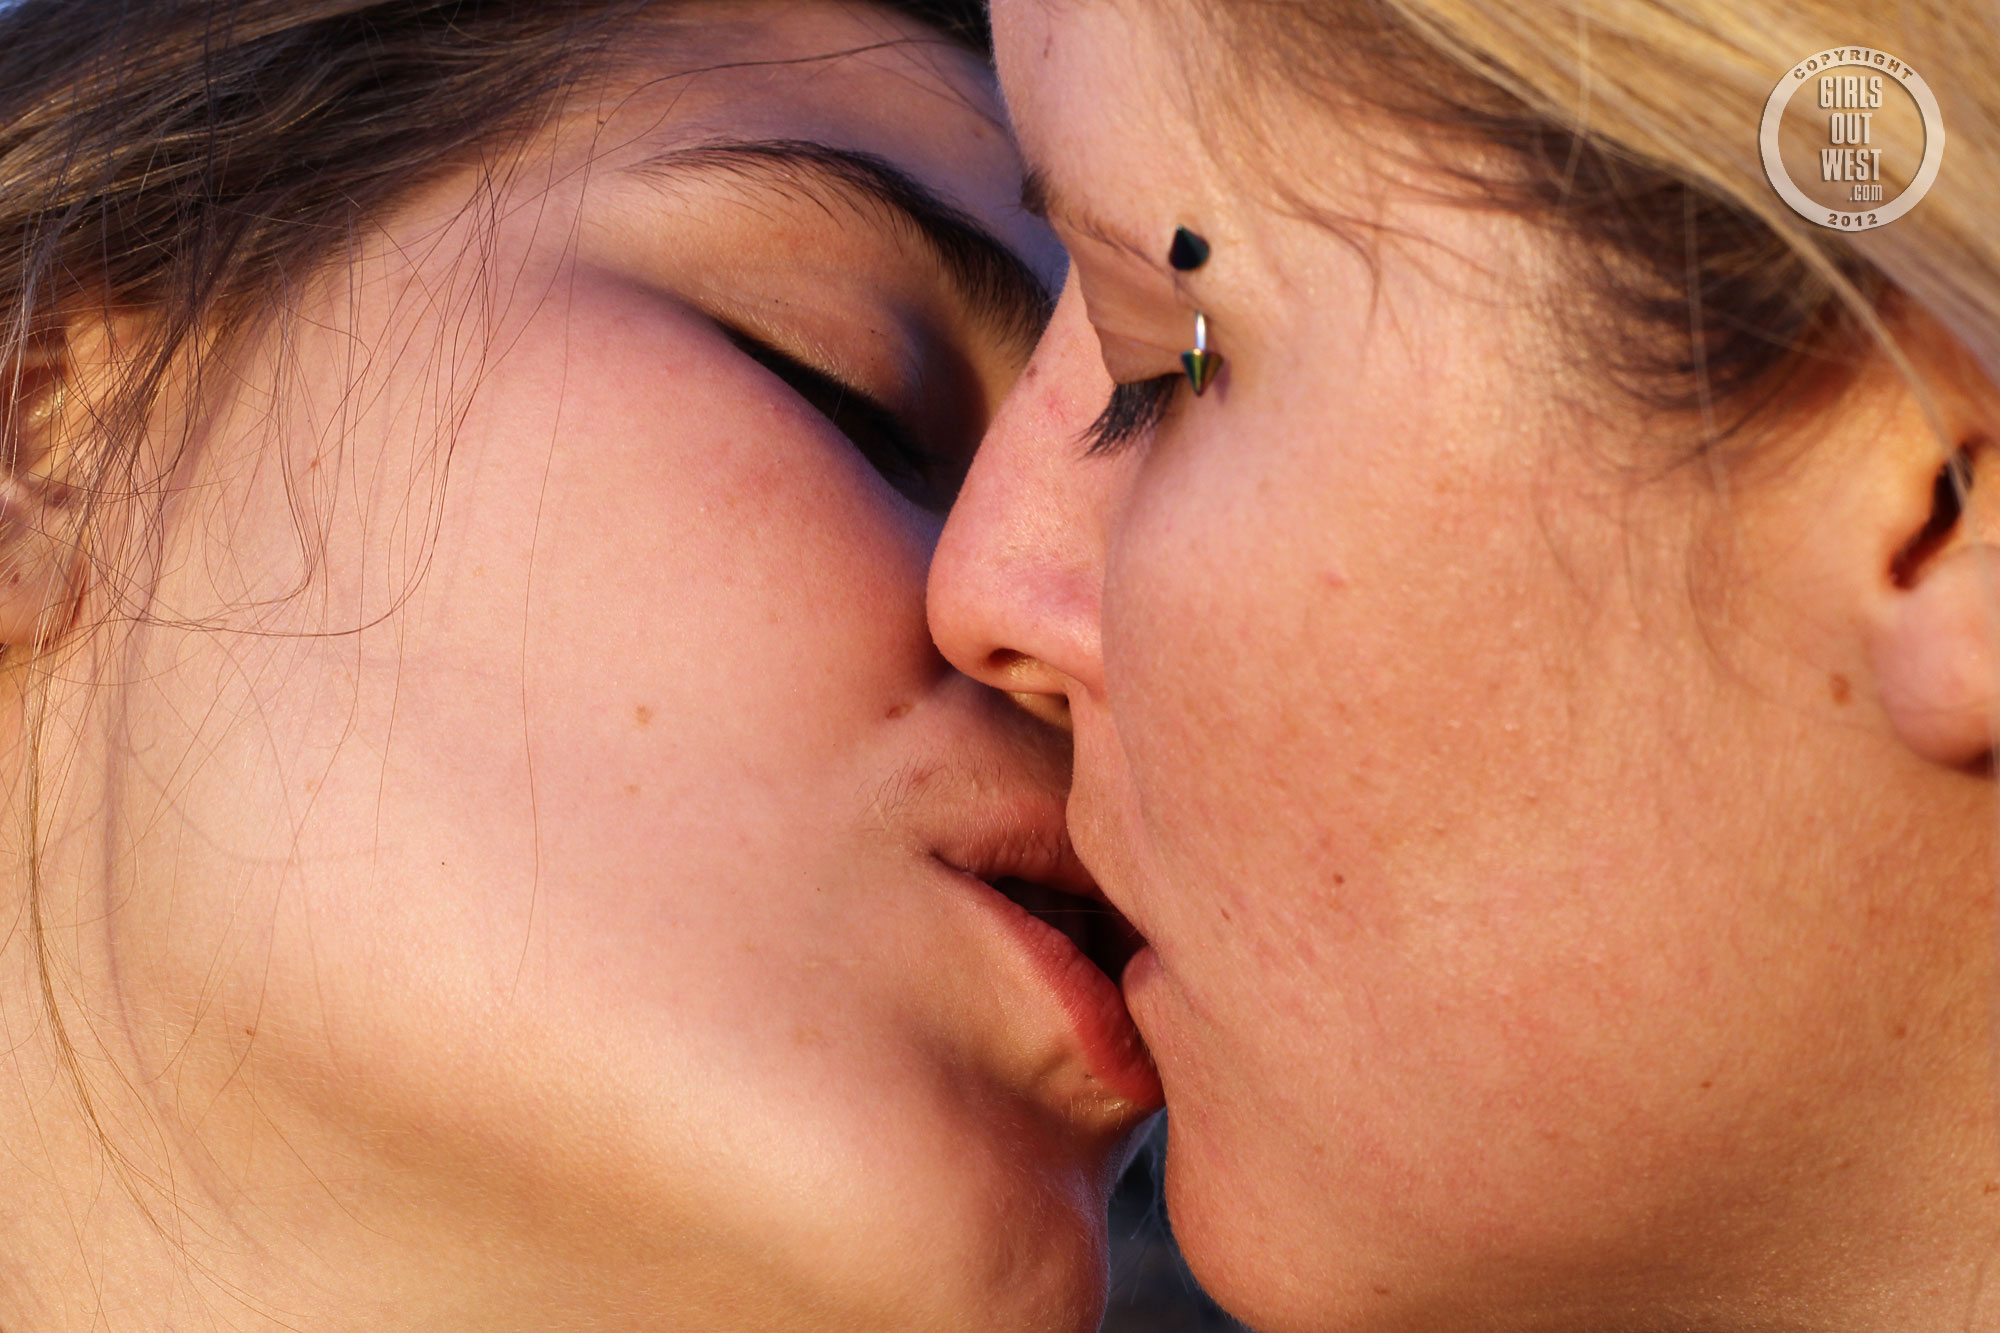 wpid-two-amateur-lesbian-friends-play-in-public7.jpg